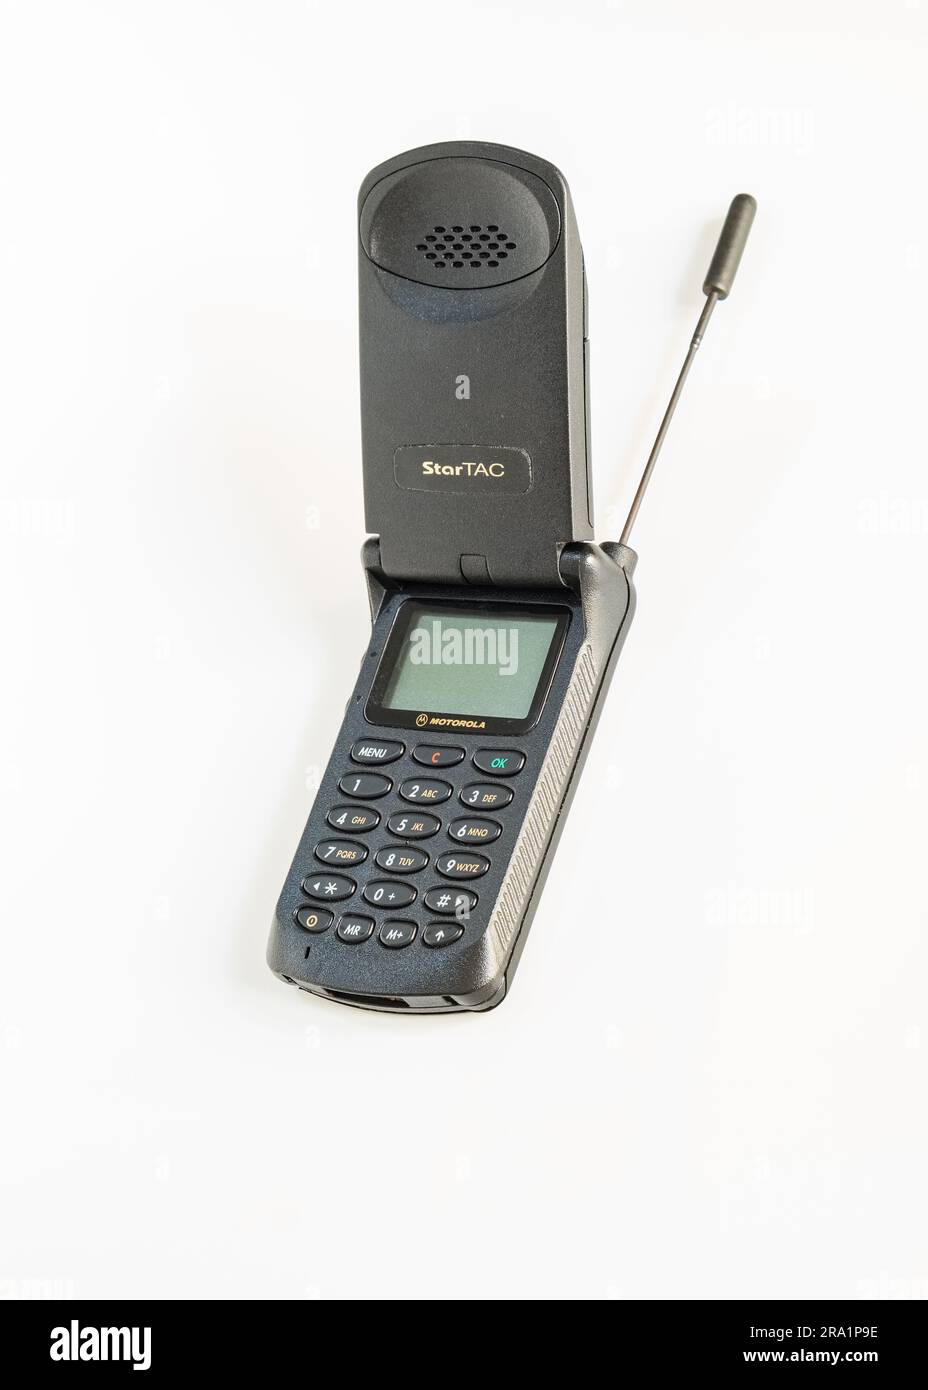 Motorola Startac, telefono cellulare aperto degli anni '90 con l'antenna rimossa, un'icona tecnologica che ha fatto la storia della telefonia mobile. Foto Stock